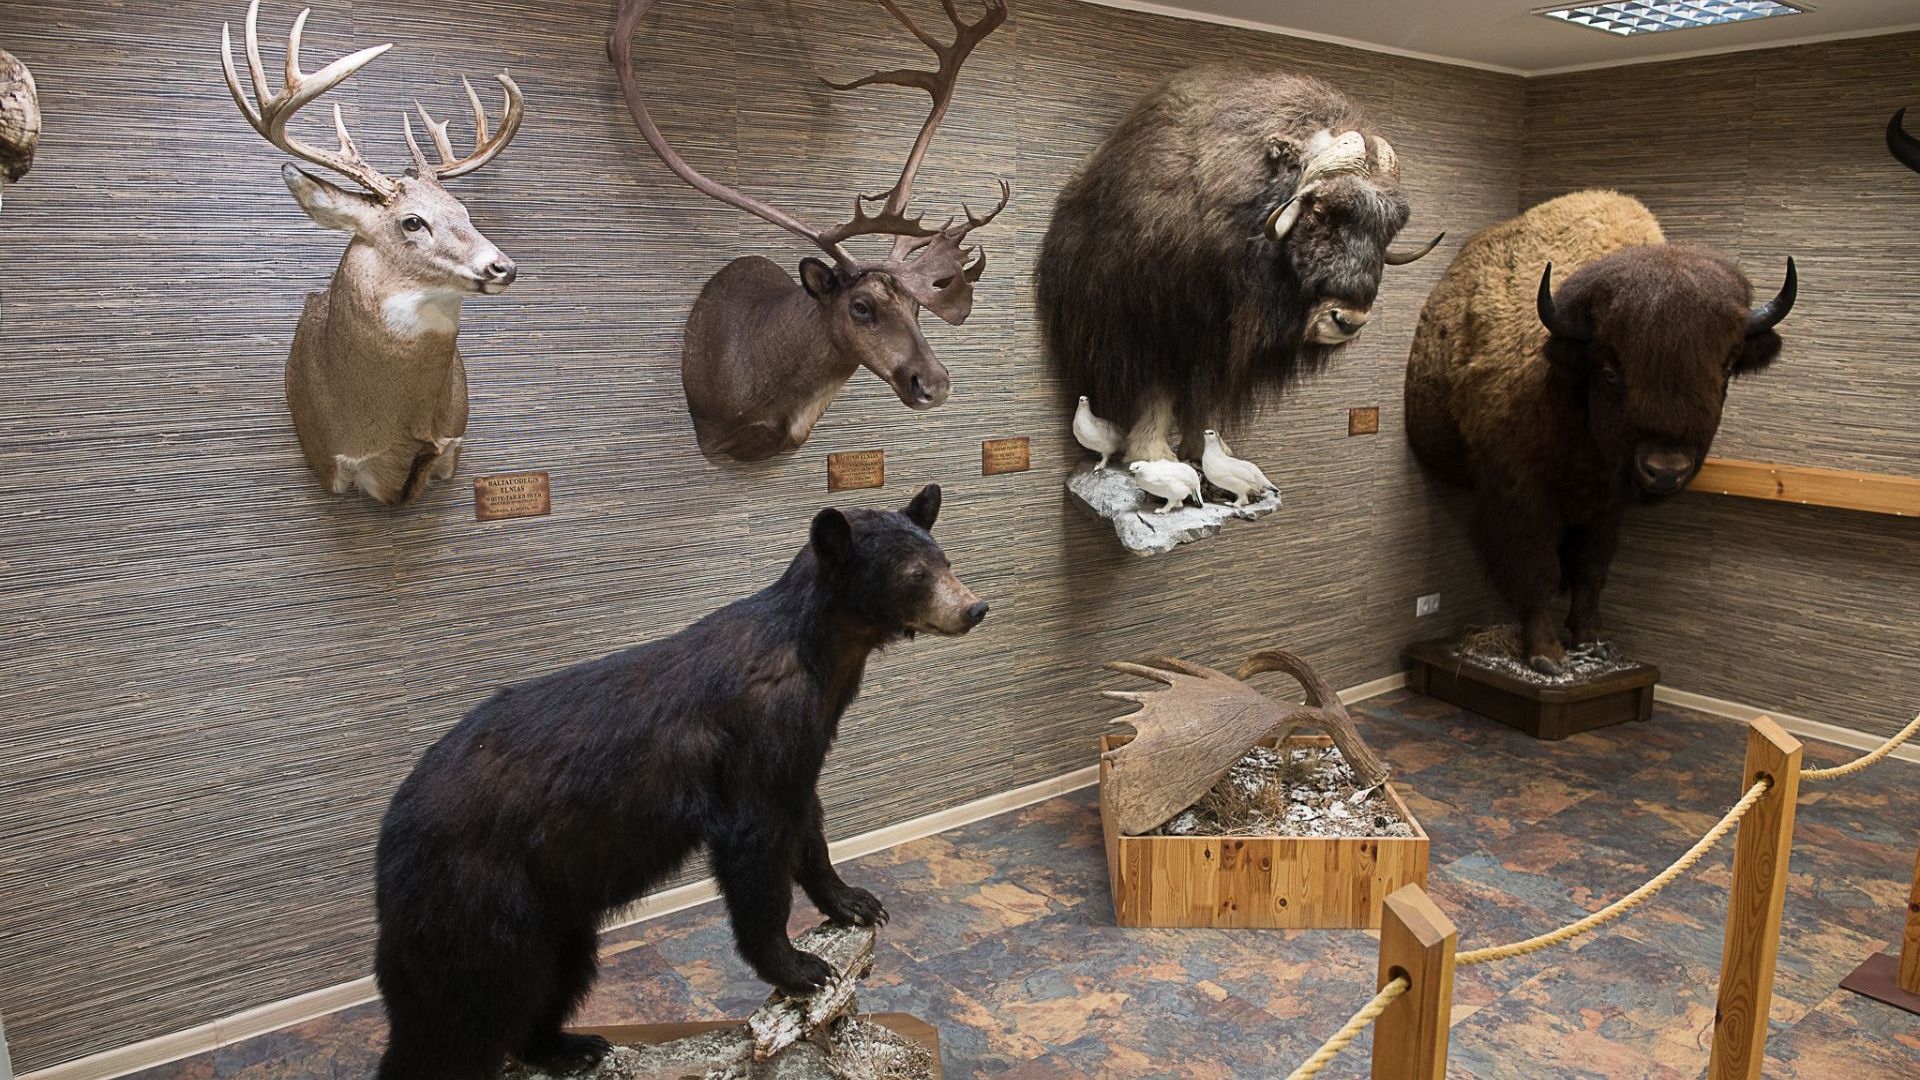 Antano Truskausko medžioklės ir gamtos muziejus